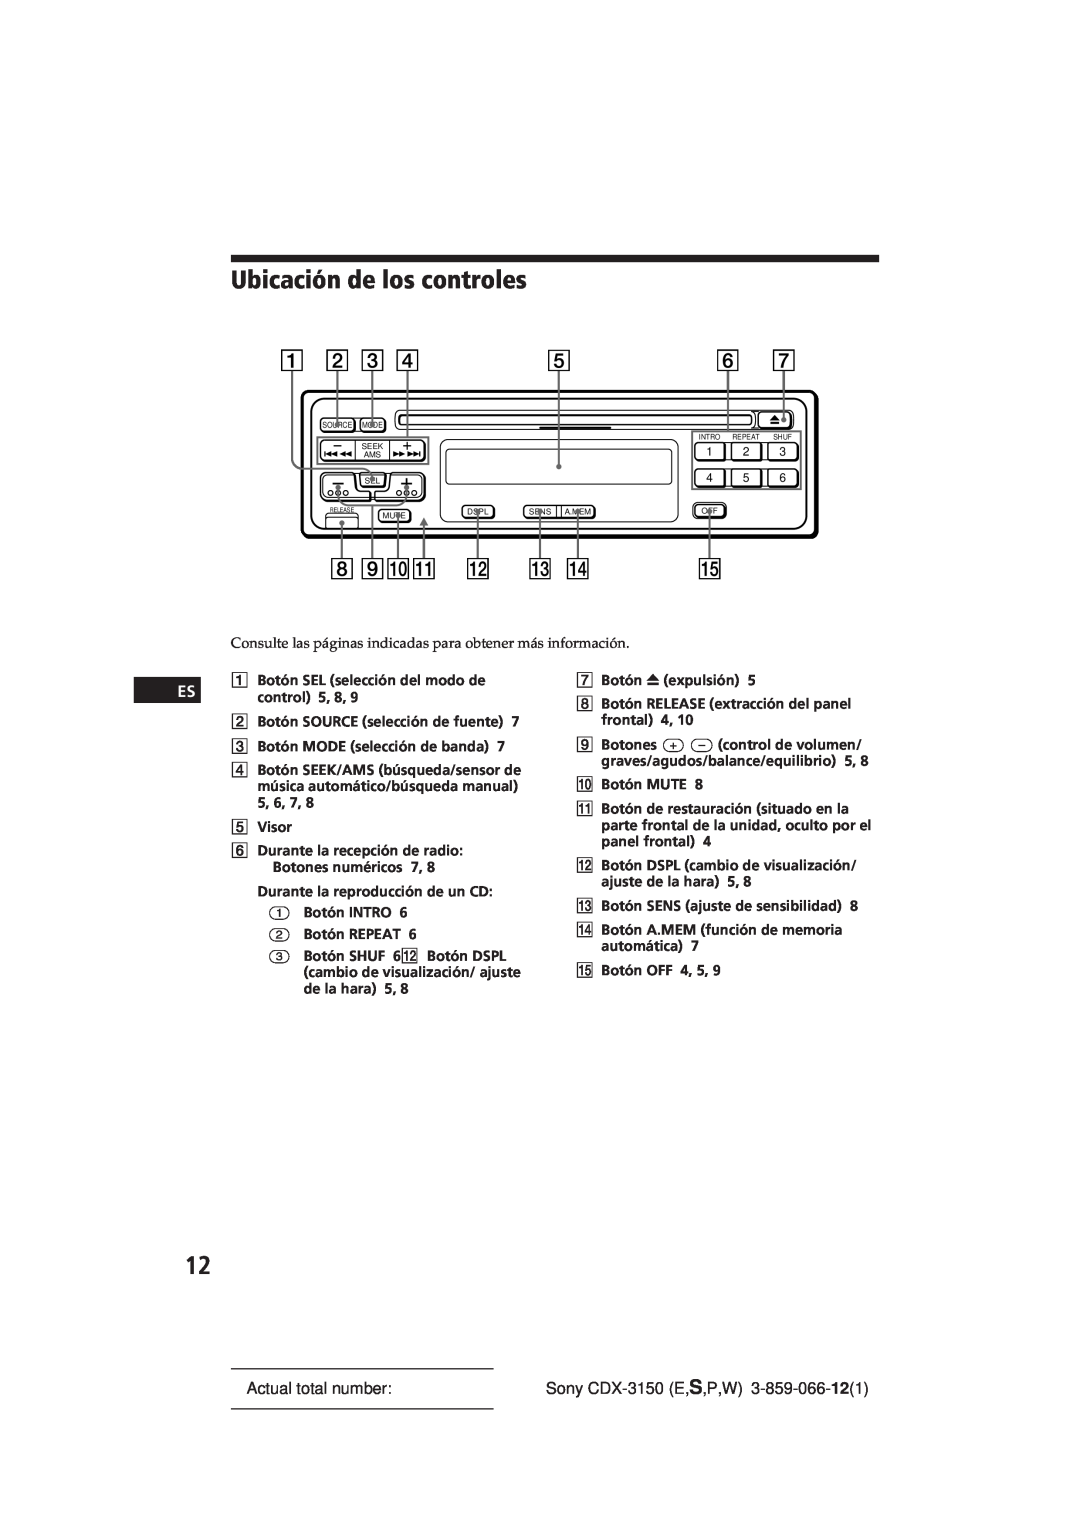 Sony manual Ubicación de los controles, Actual total number, Sony CDX-3150E,S,P,W 